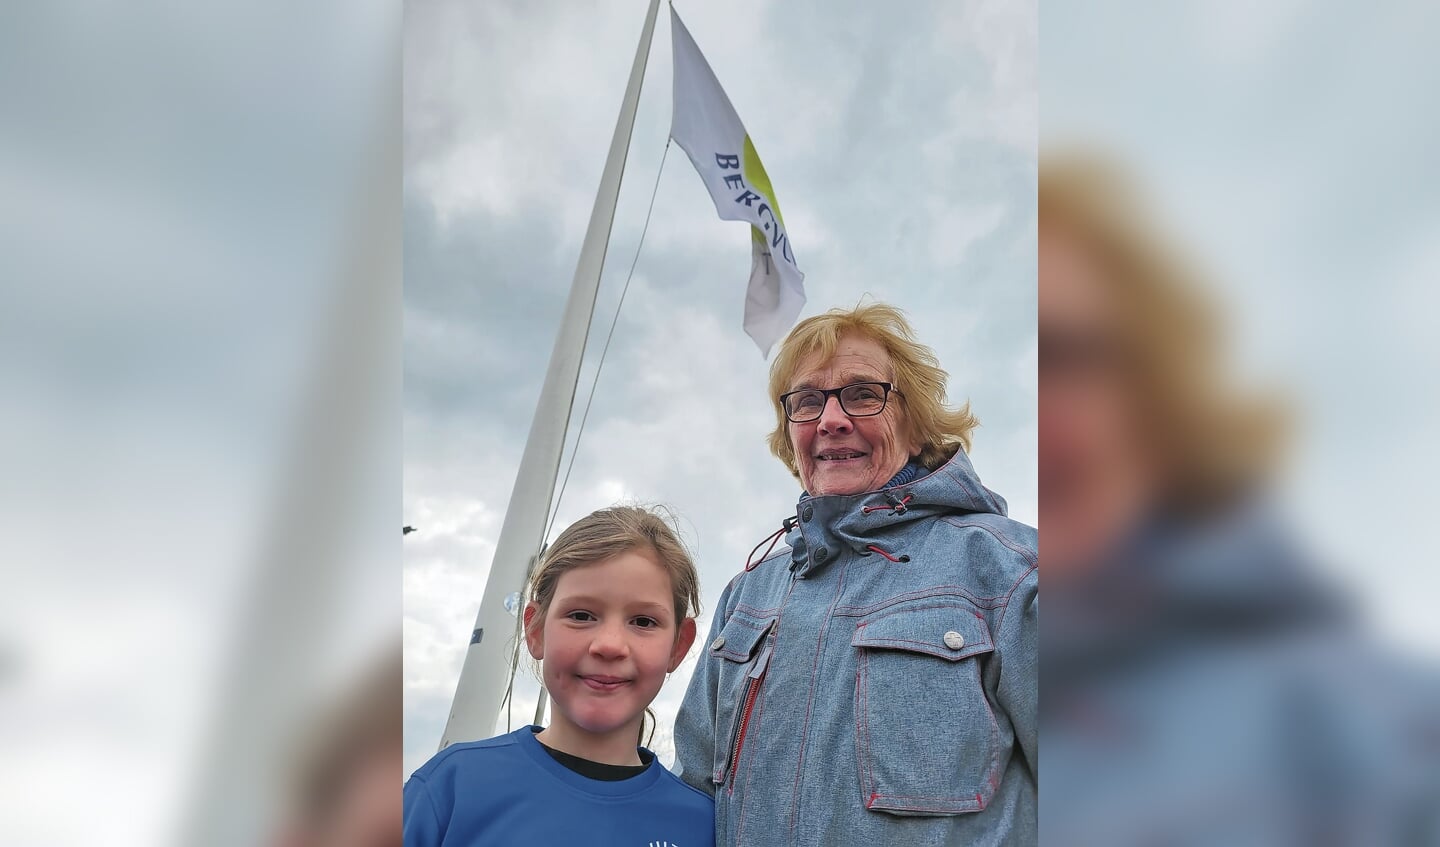 Sari Bestebreurtje (85) en haar nichtje Sarah Bestebreurtje (6) hesen als oudste en jongste lid van de tennisclub Bergvliet de clubvlag.Dit deden ze op zaterdag 2 april als opening van het tennisseizoen 2022.